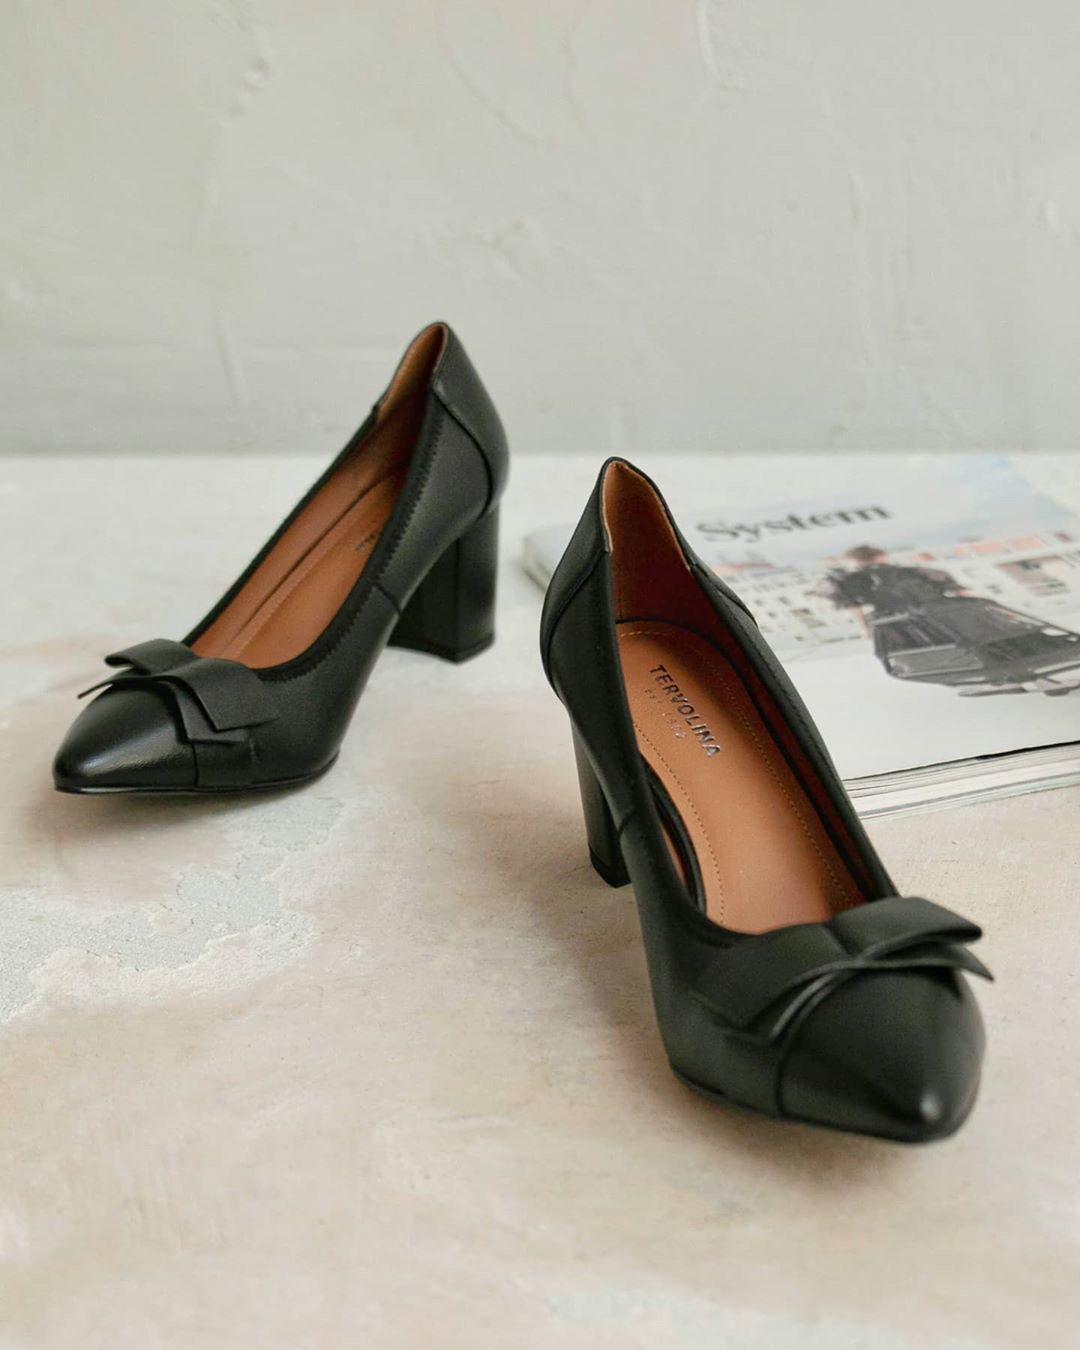 TERVOLINA - Идеальные туфли для офиса. 
Какие они?
 
Элегантного чёрного цвета, подходящего деловому дресс-коду.
 
С кокетливым бантом, подчеркивающим женственность образа. 
 
На высоком устойчивом ка...